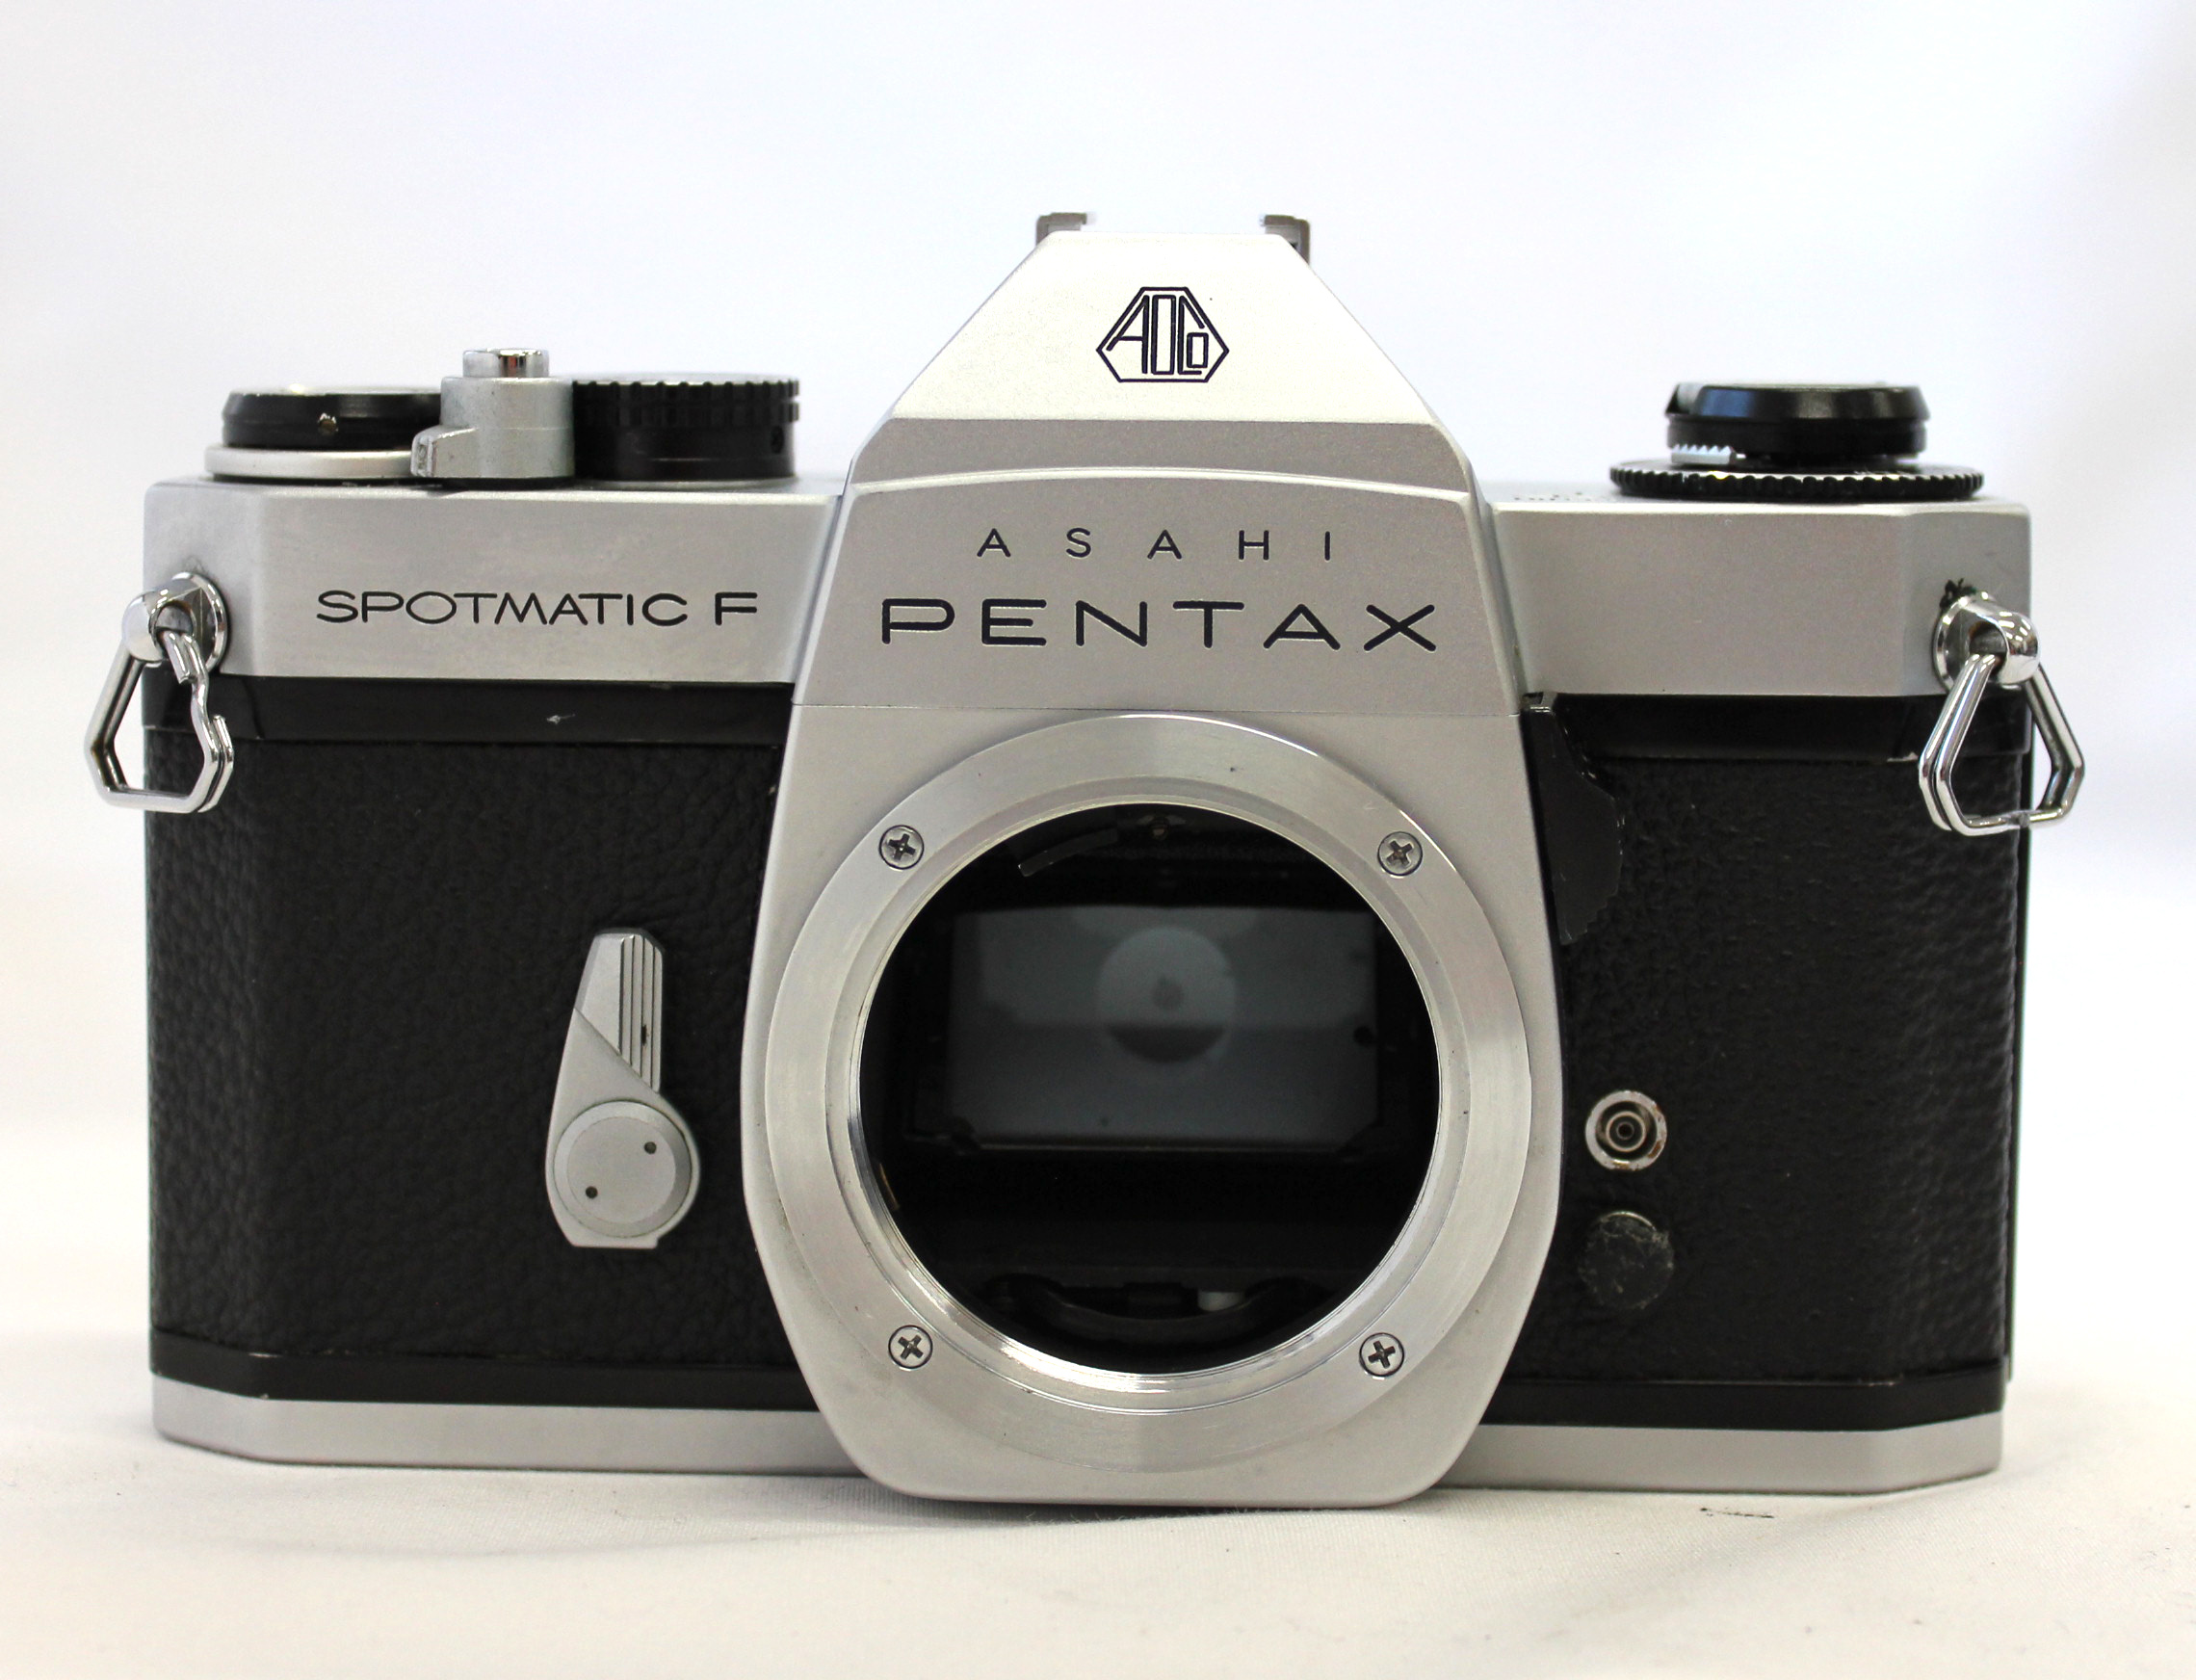 Asahi Pentax Spotmatic F SPF Camera w/ SMC Takumar 55mm F/1.8 from